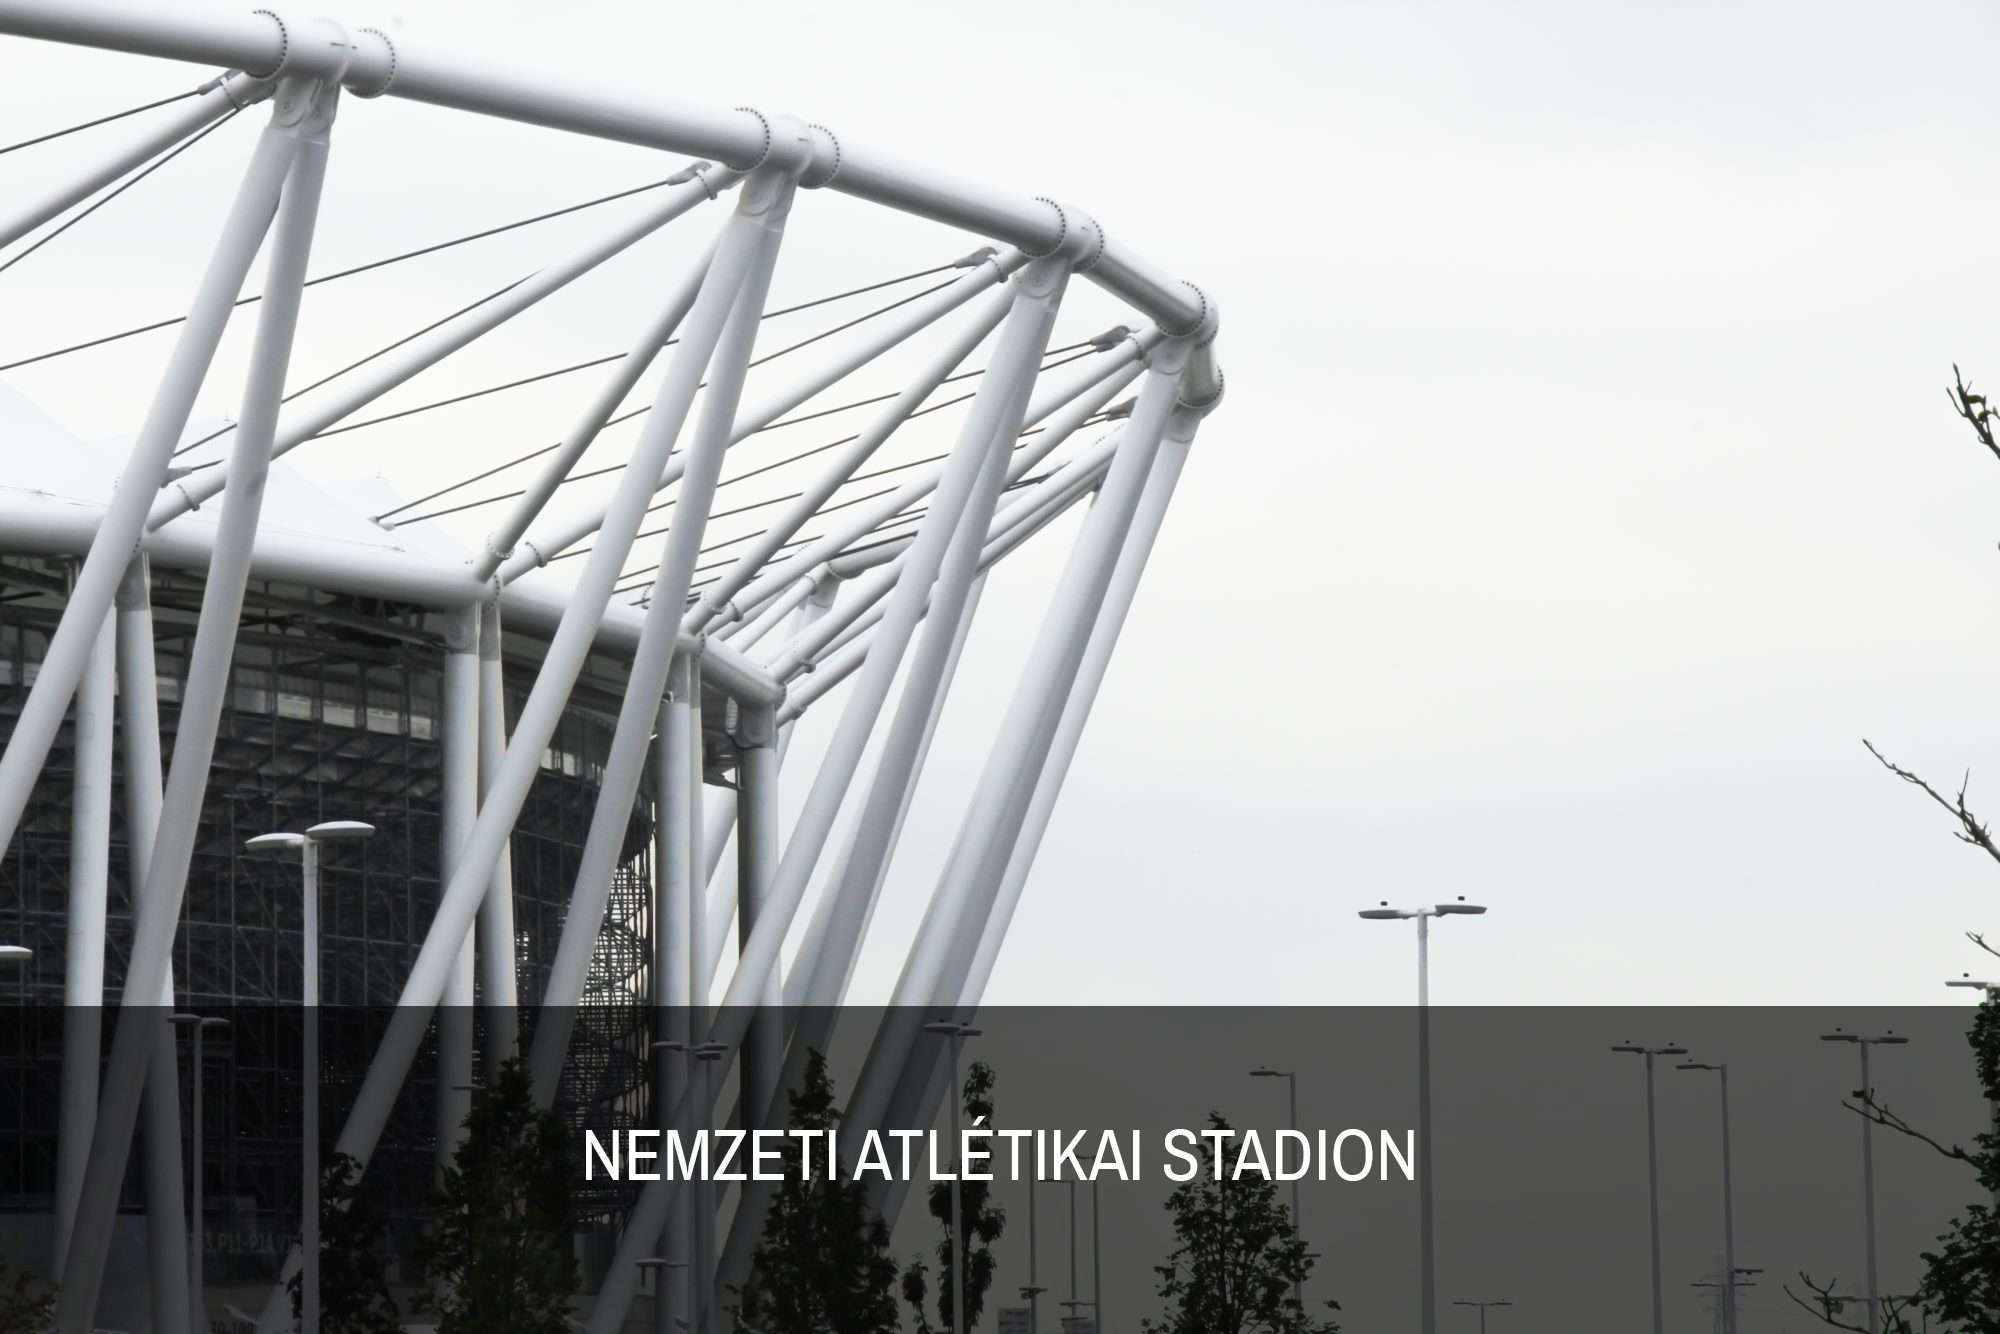 Nemzeti-Atletikai-Stadion-alap-referencia.jpg